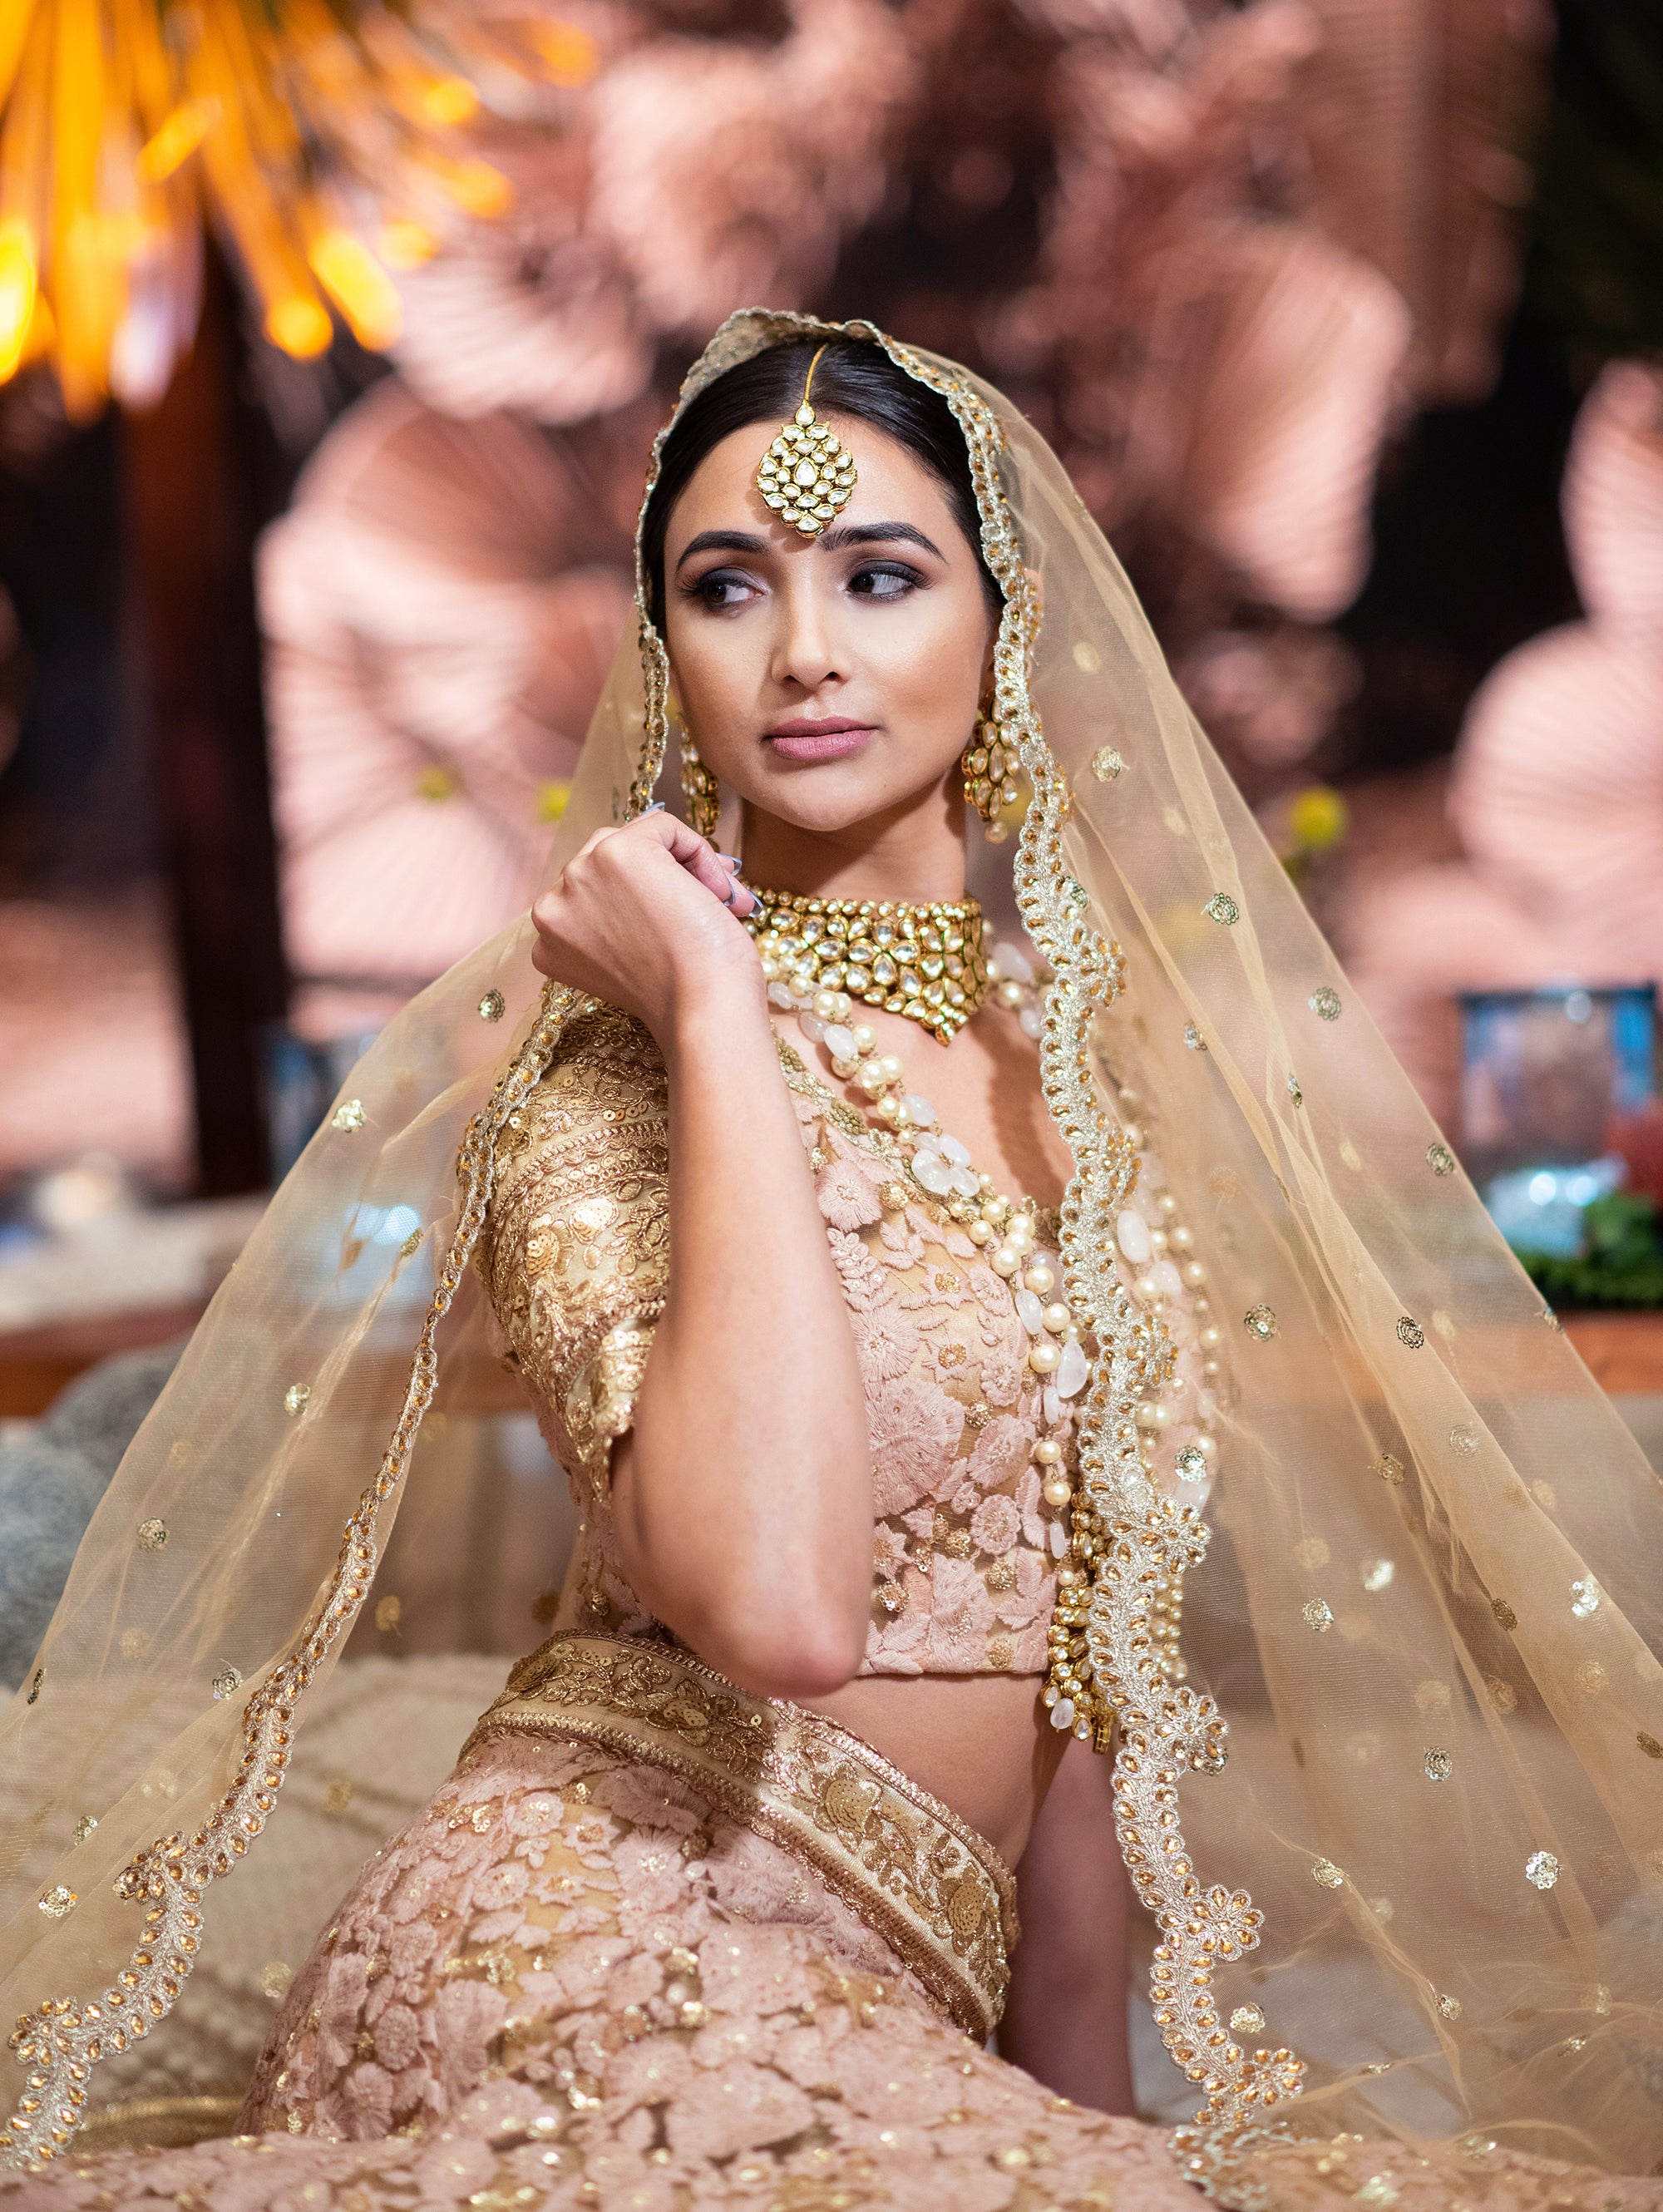 Heavily Embellished Golden Indian Wedding Dress for Bridal Wear